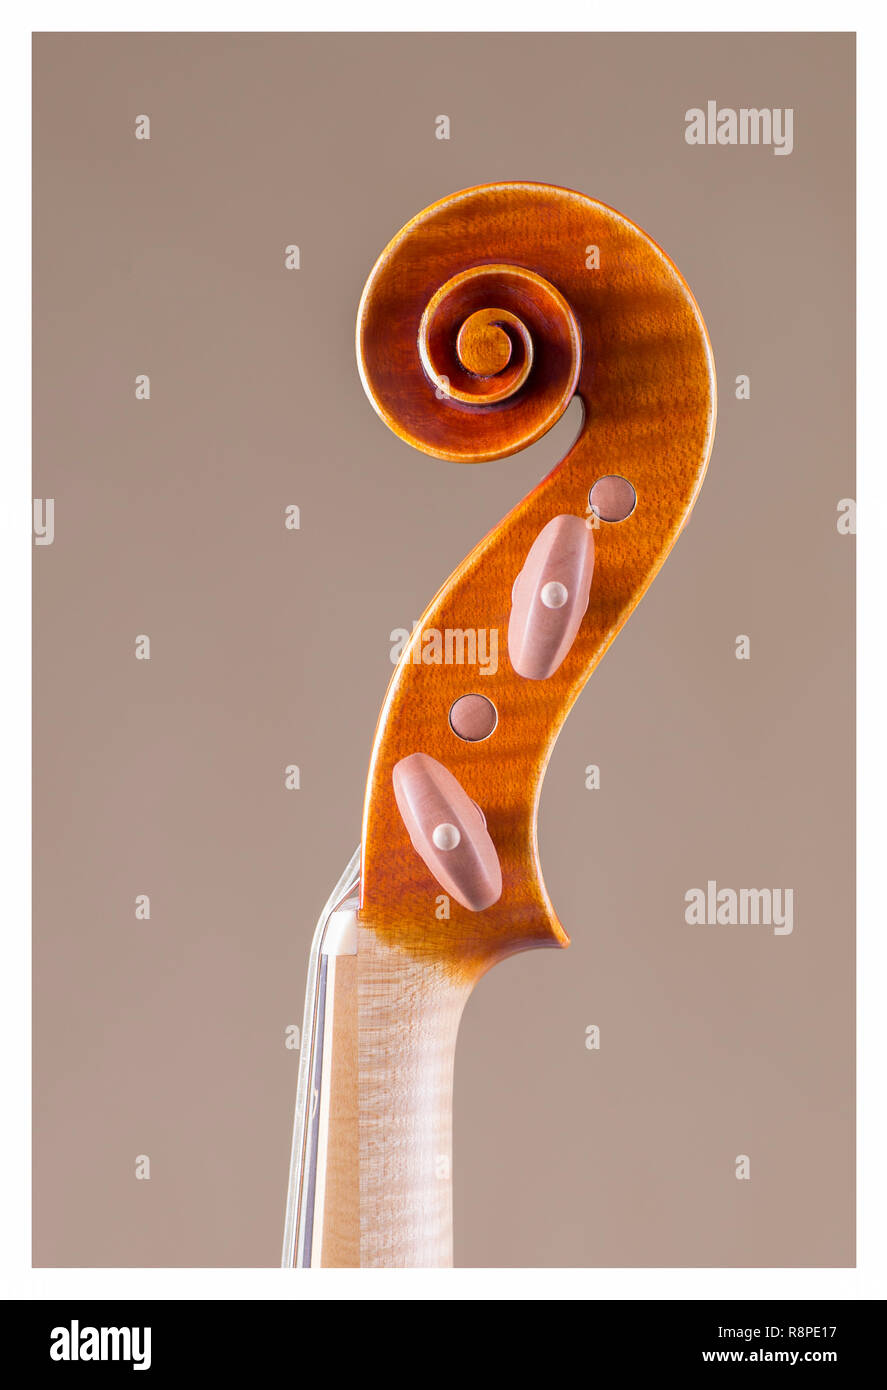 Violino barocco immagini e fotografie stock ad alta risoluzione - Alamy